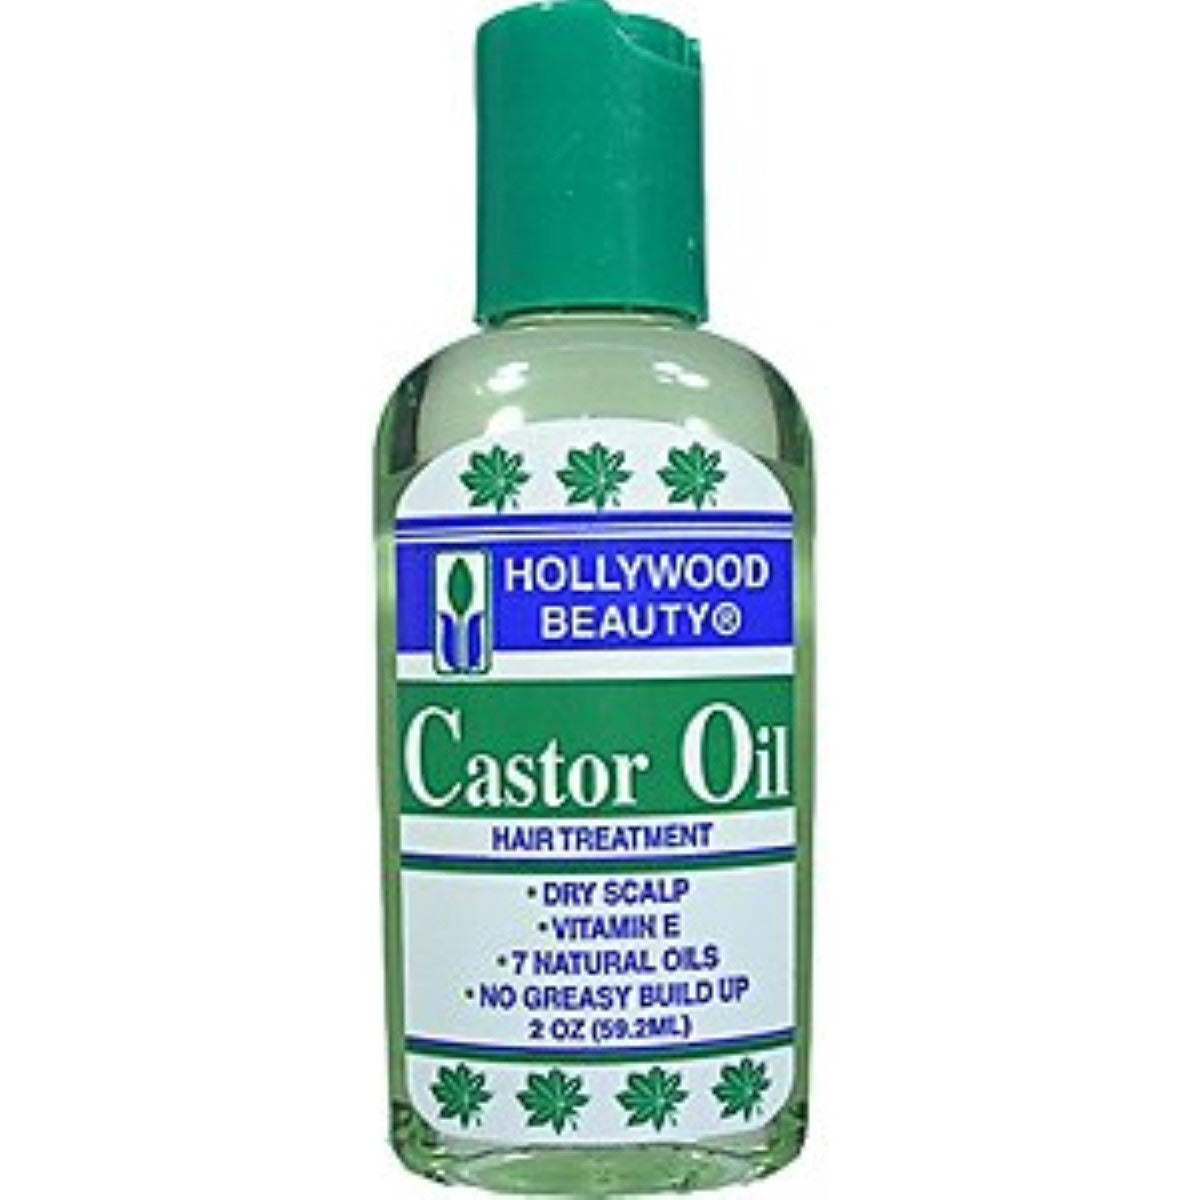 Hollywood Beauty Castor Oil, 2 Oz